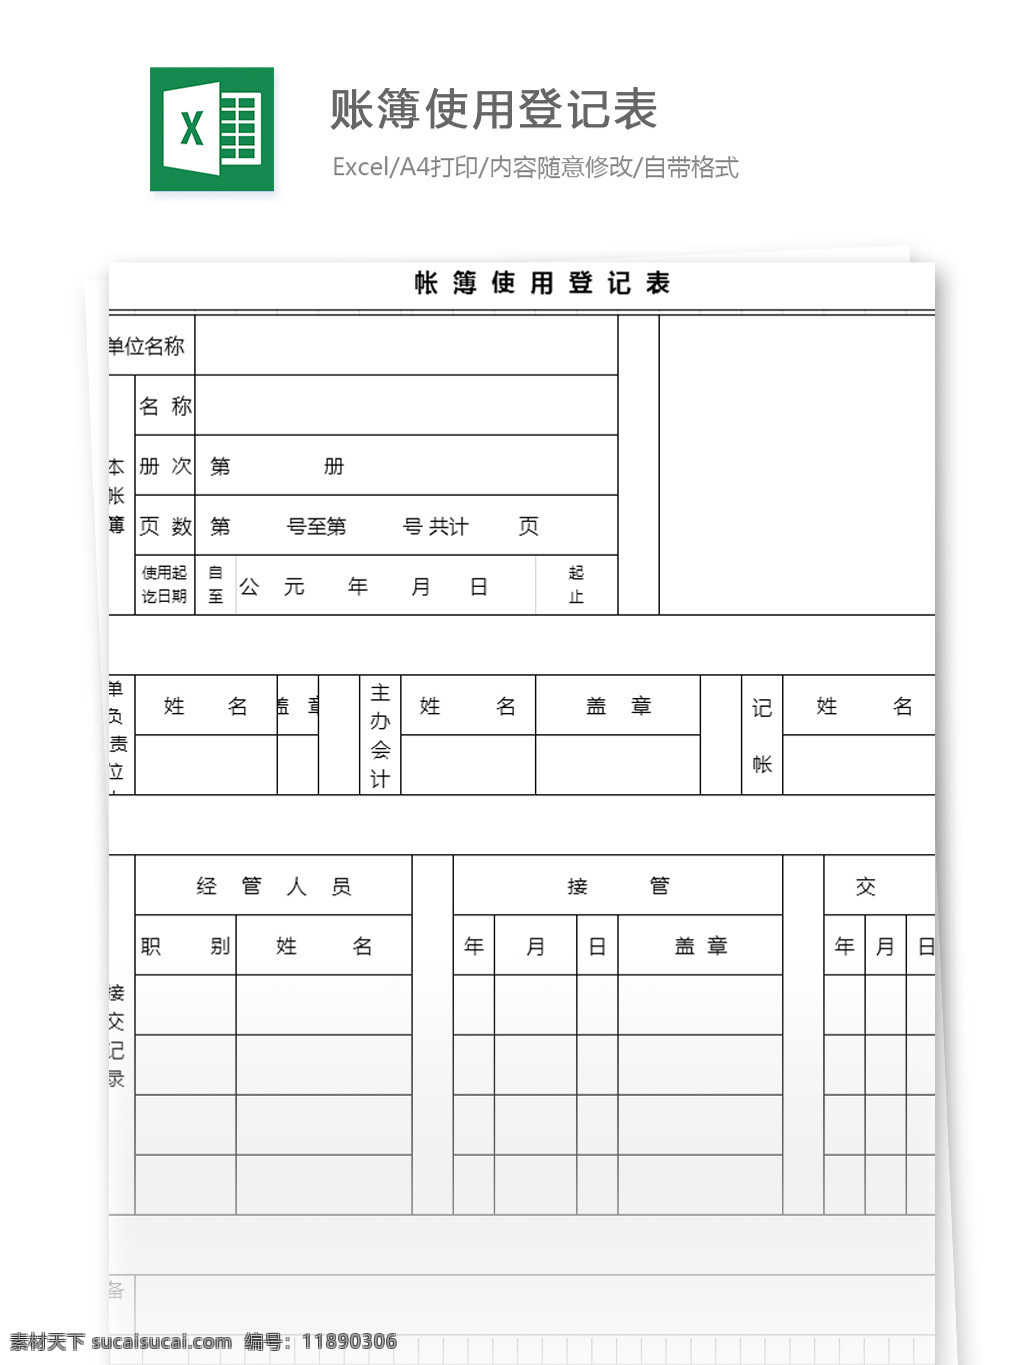 账簿 使用 登记表 excel 模板 表格模板 图表 表格设计 表格